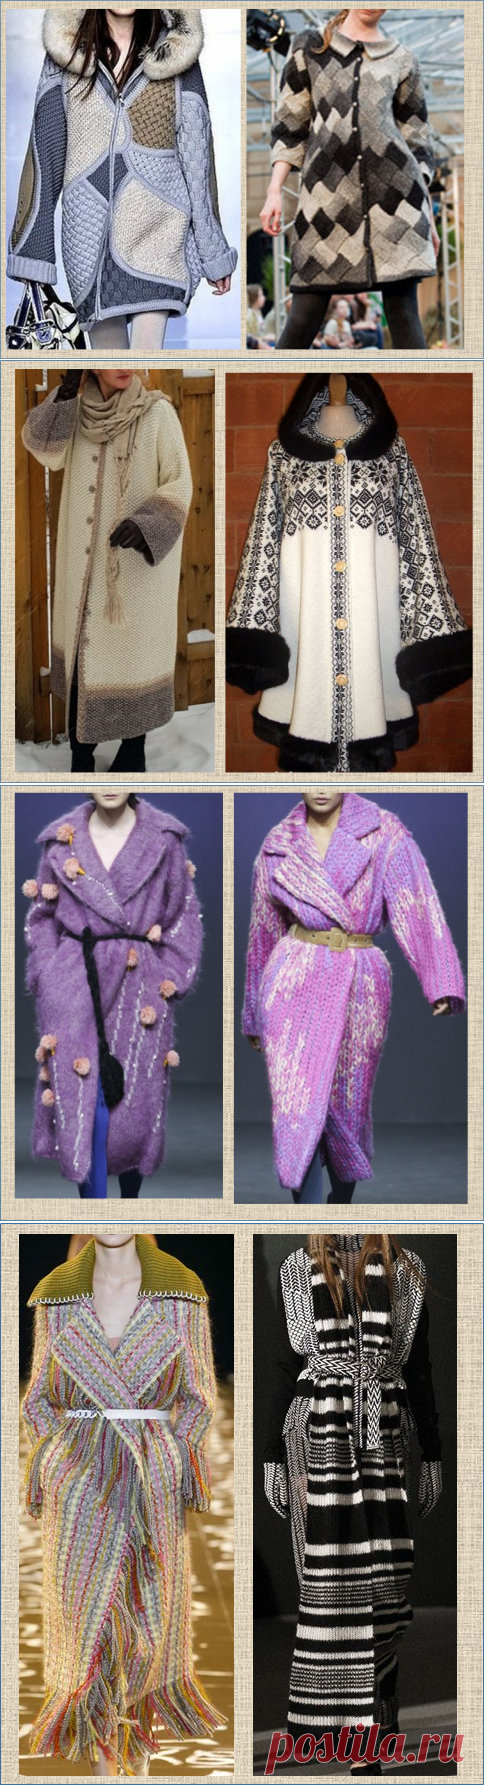 Вязаное пальто - тепло, красиво и полезно или только для красоты? - рассматриваем 50 моделей | МНЕ ИНТЕРЕСНО | Яндекс Дзен.Идеи.